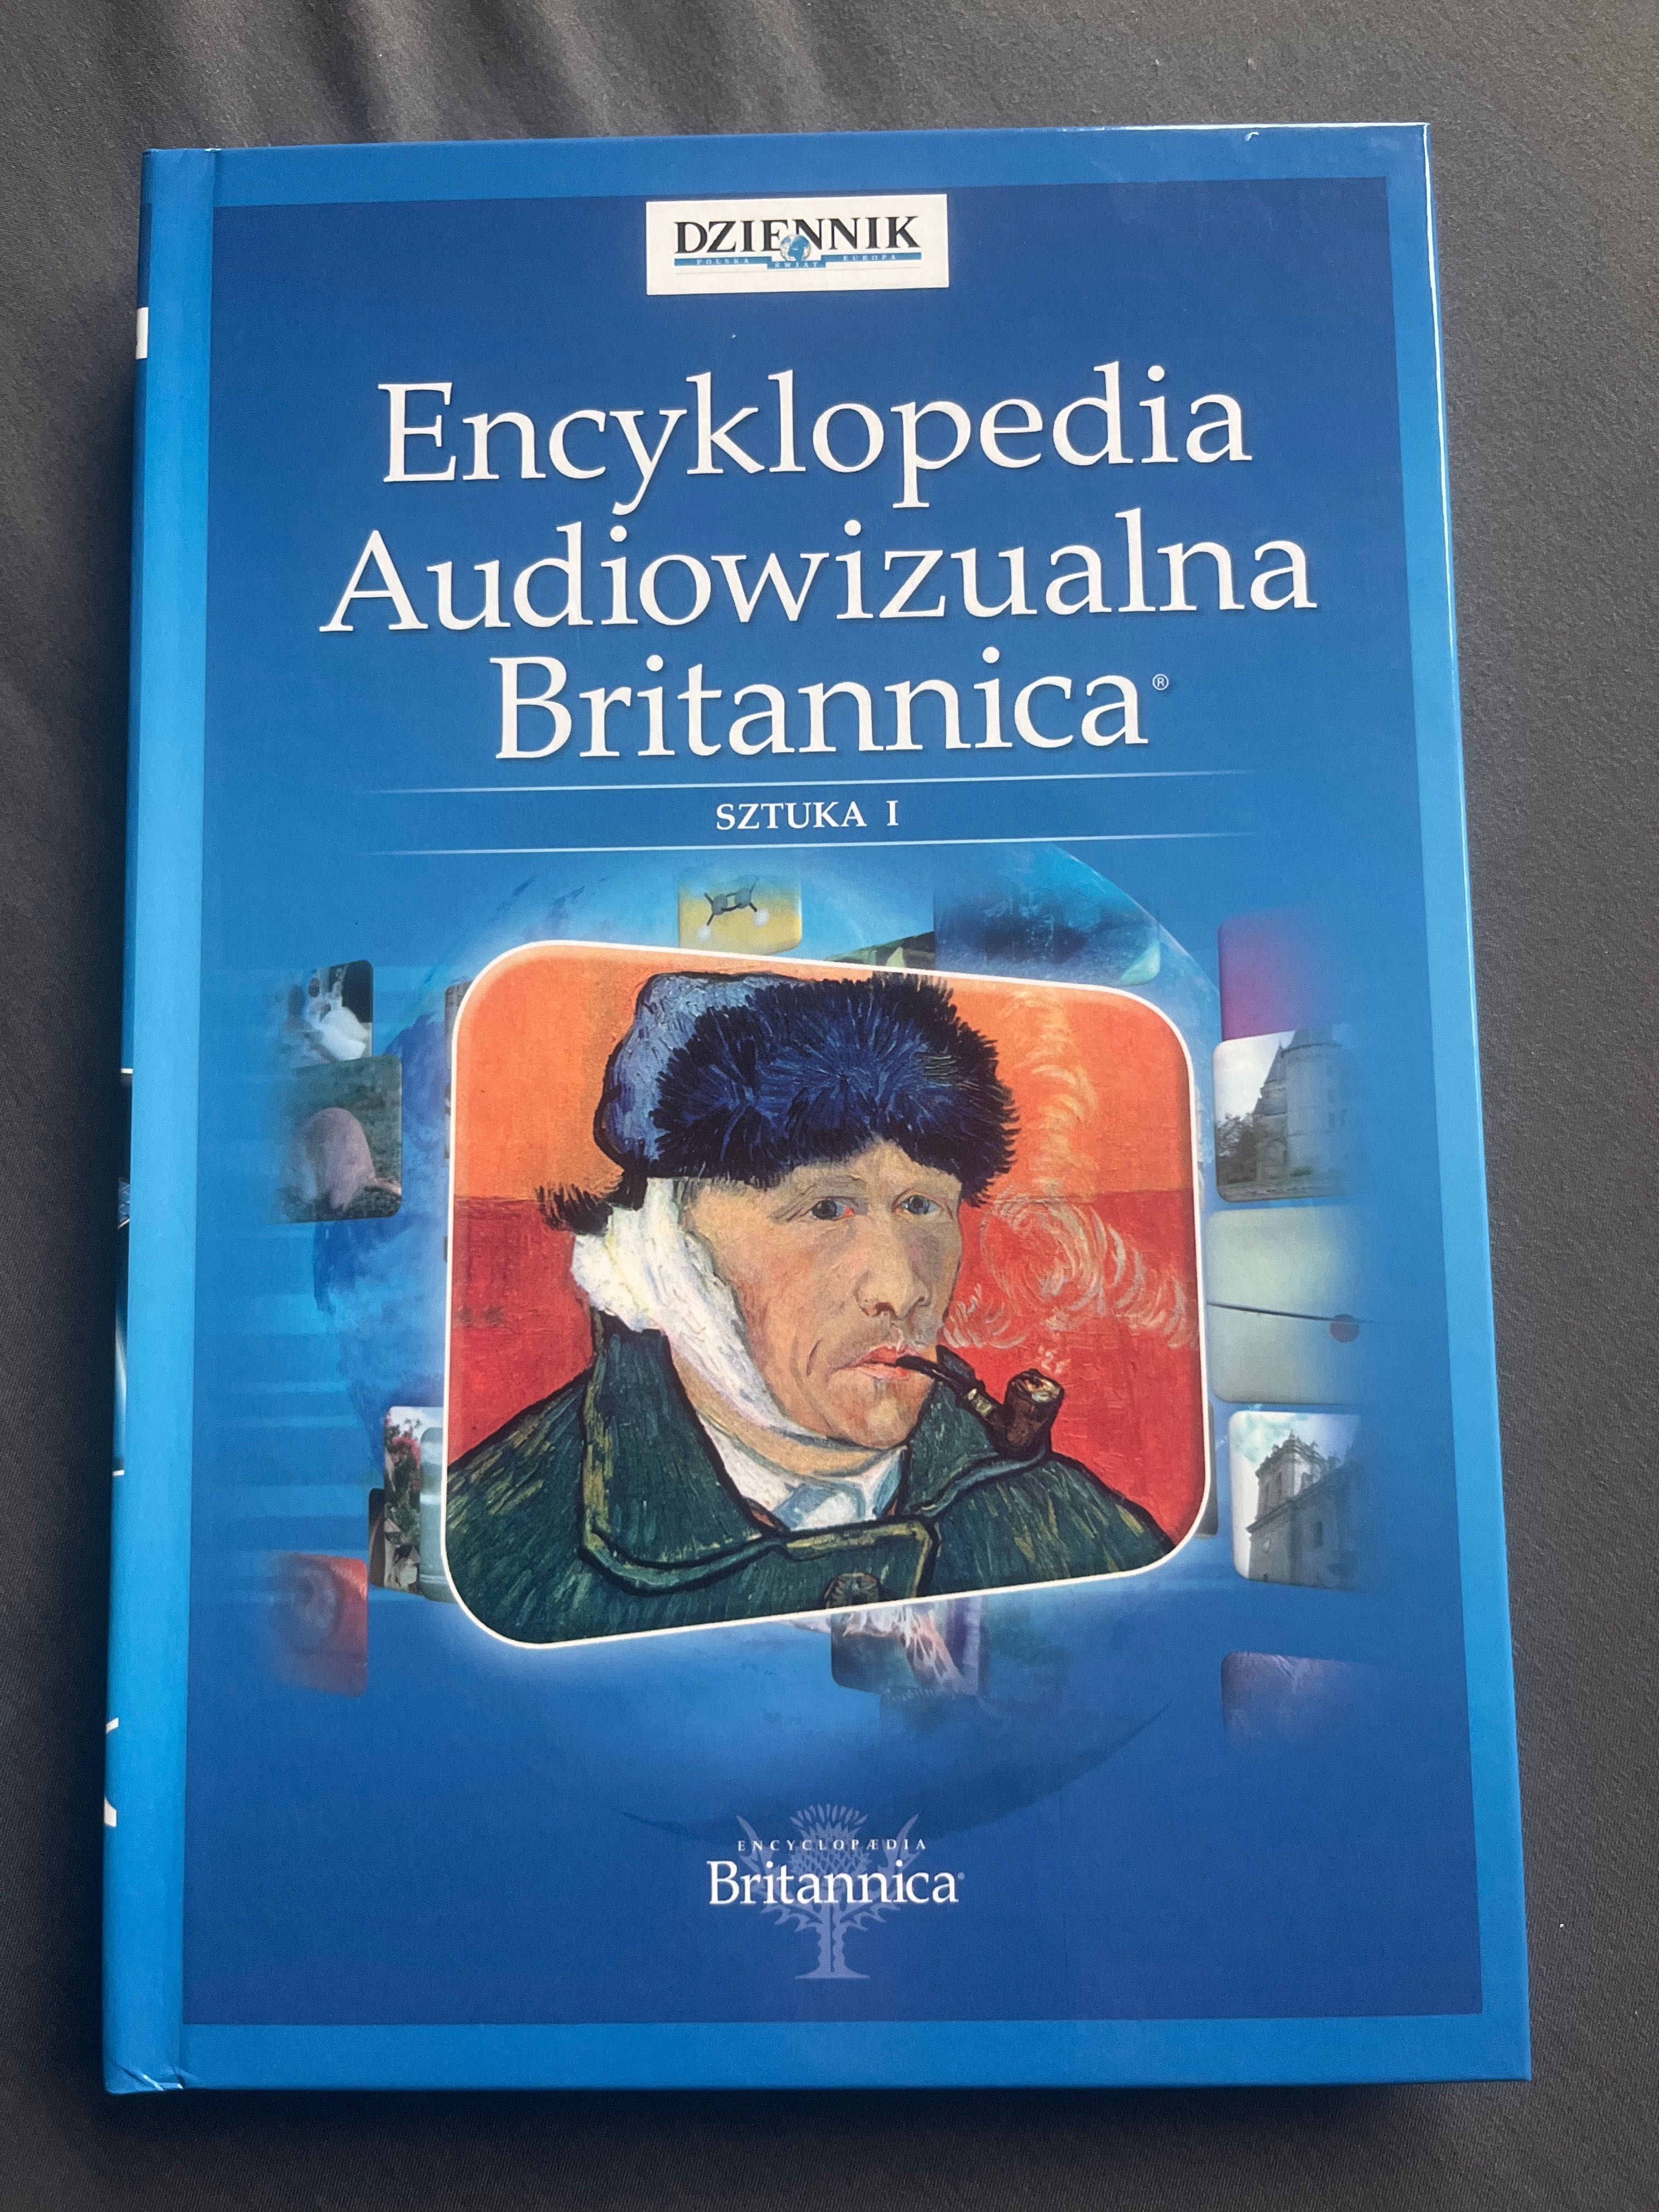 Encyklopedia Audiowizualna Britannica - Sztuka, z DVD, Nowa